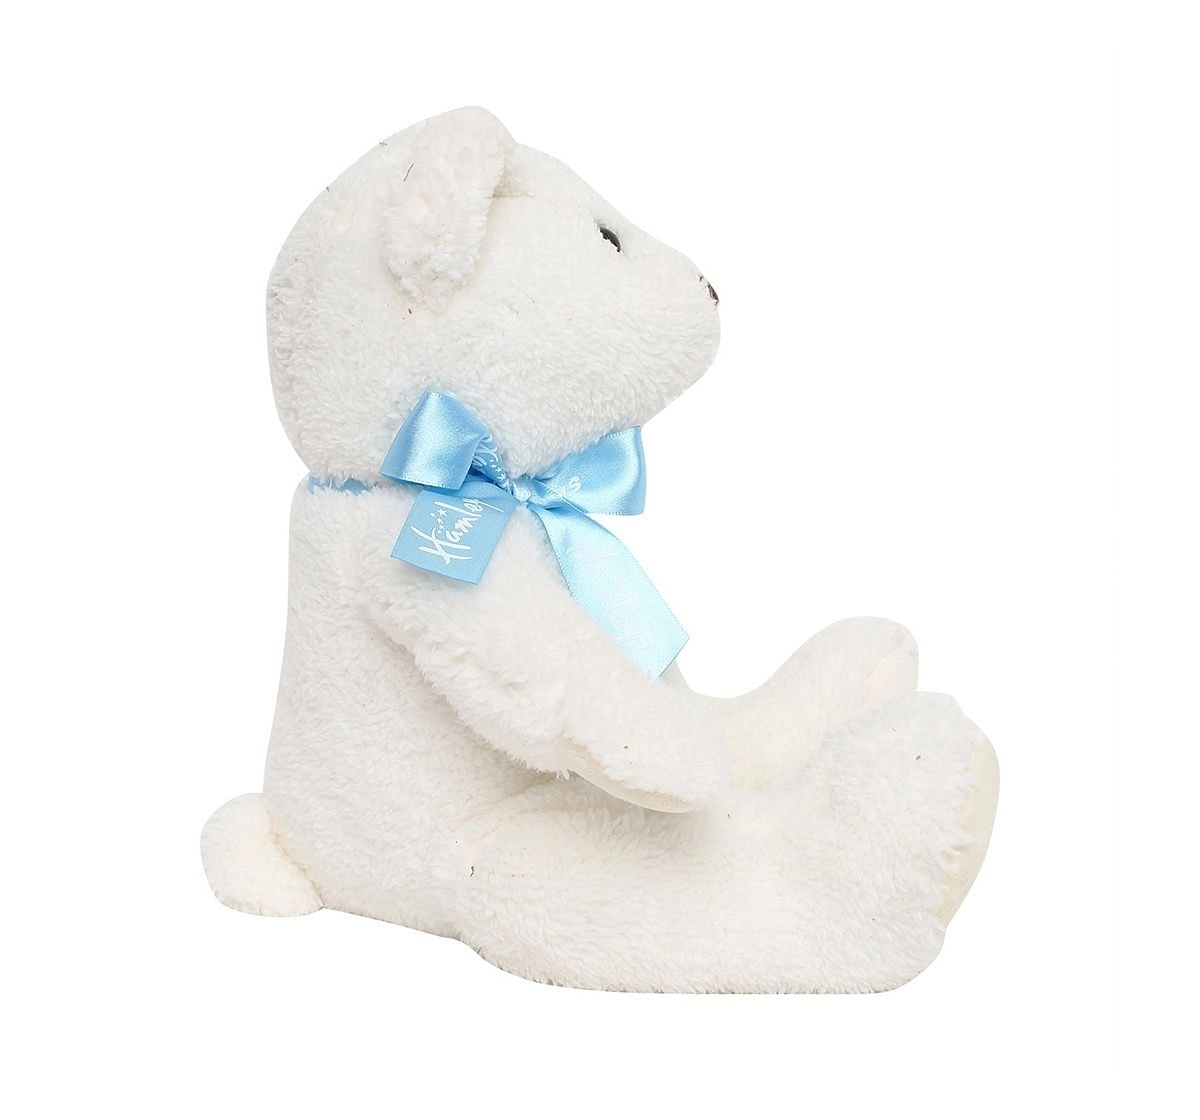  Hamleys Muffin Bear , White Teddy Bears for Kids age 0M+ - 13 Cm (White)